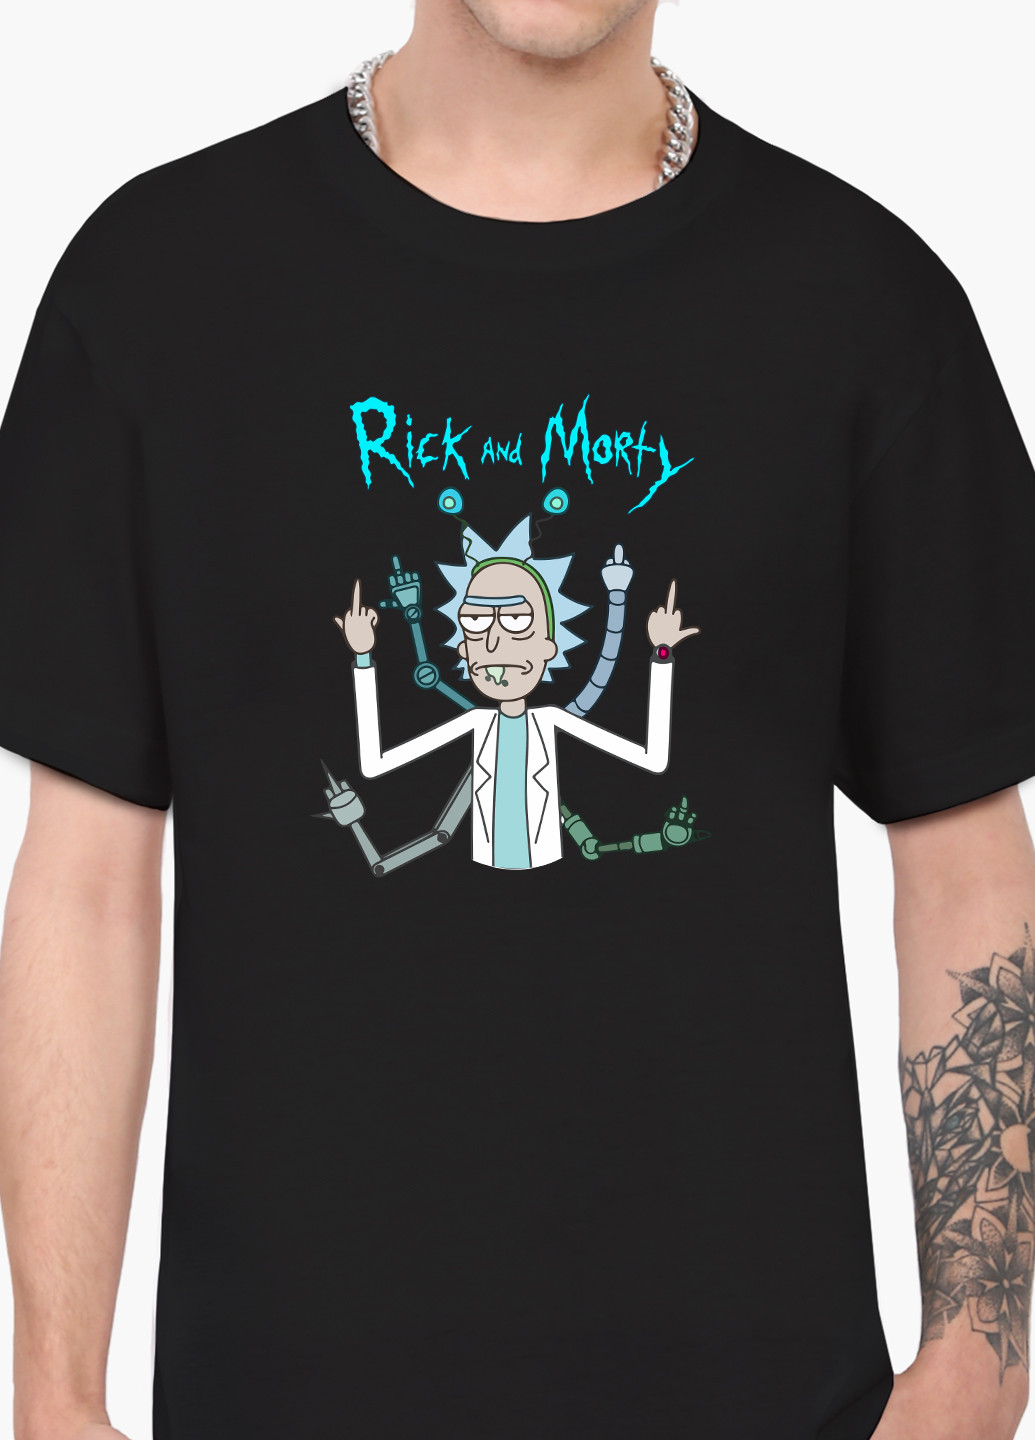 Чорна футболка чоловіча рік санчез рік і морті (rick sanchez rick and morty) (9223-2948-1) xxl MobiPrint